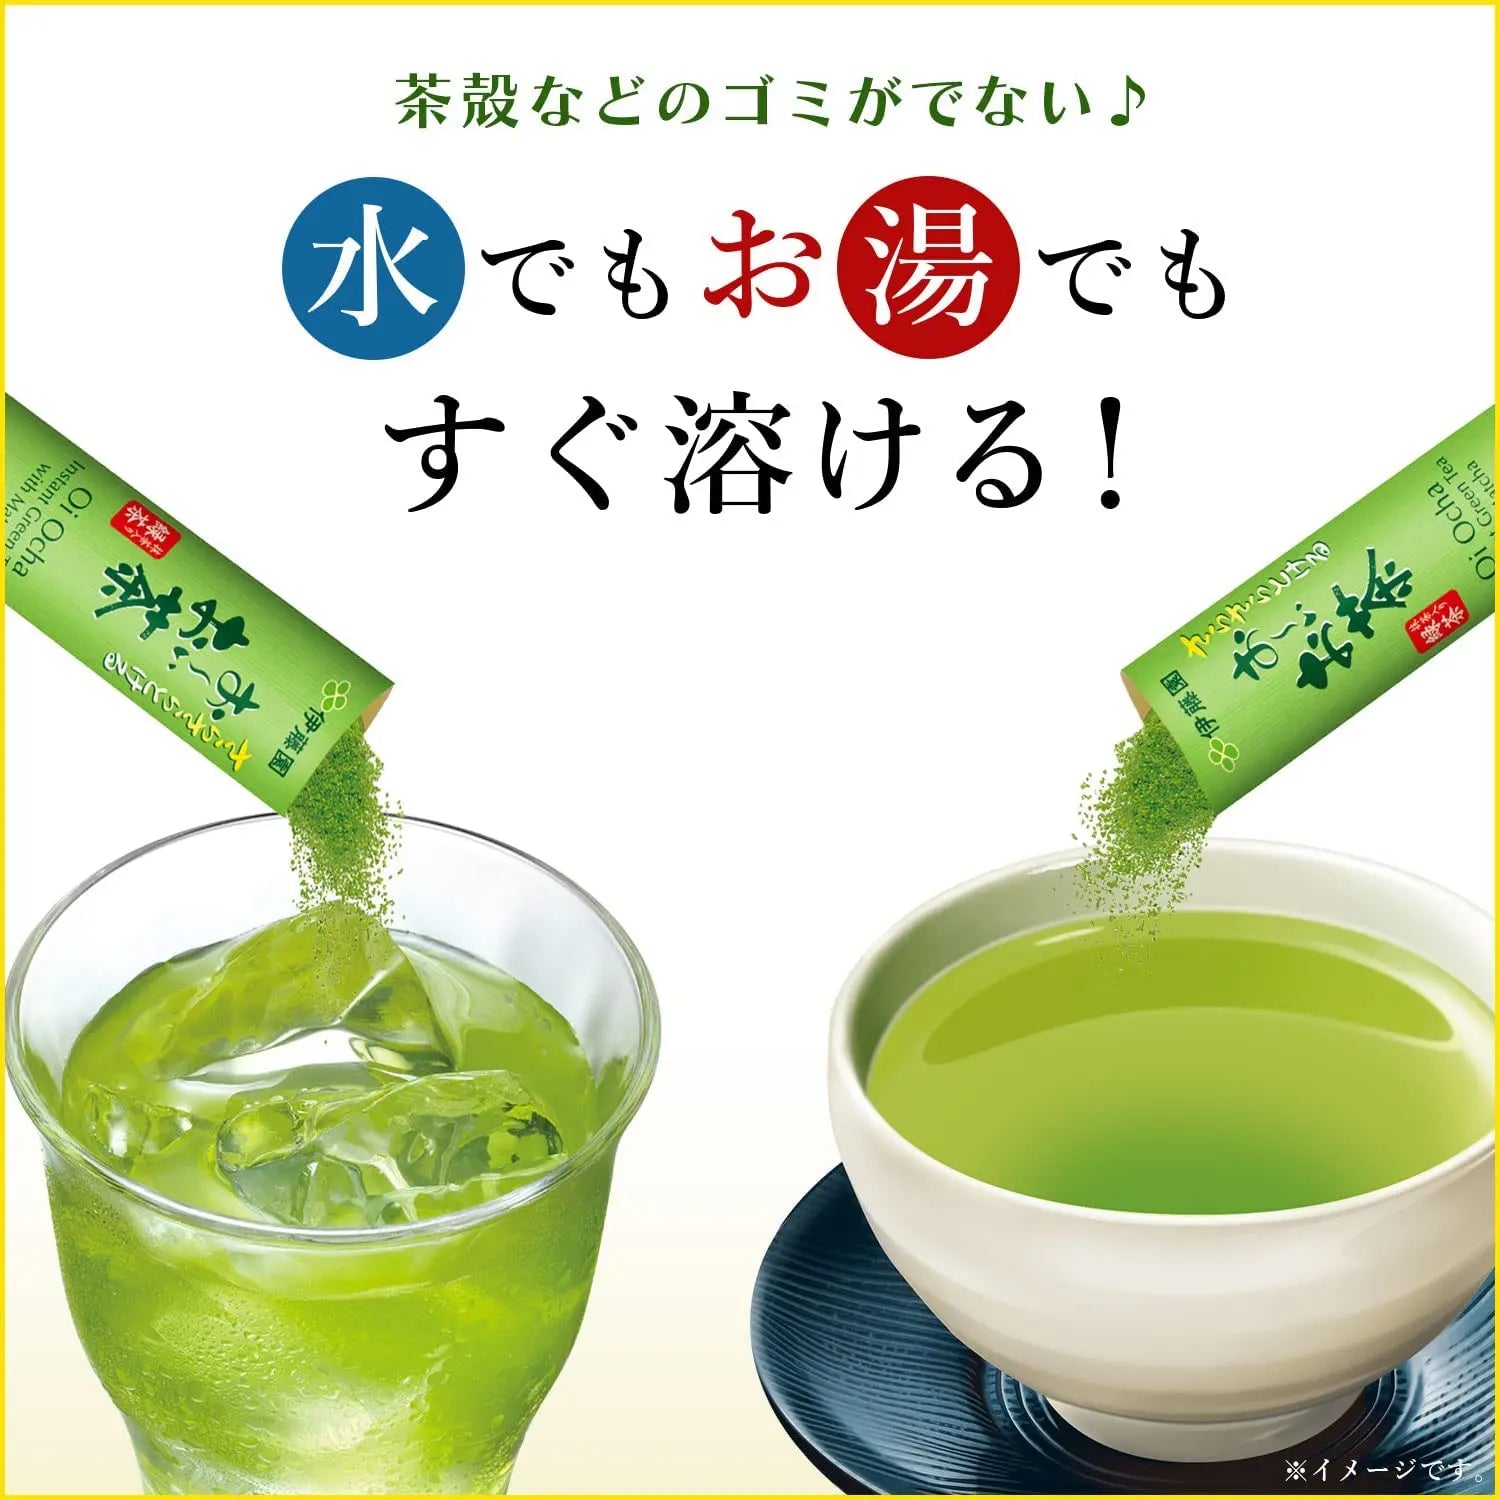 Itoen Oi Ocha Green Tea Sticks 0.8g (Pack of 100) - Buy Me Japan